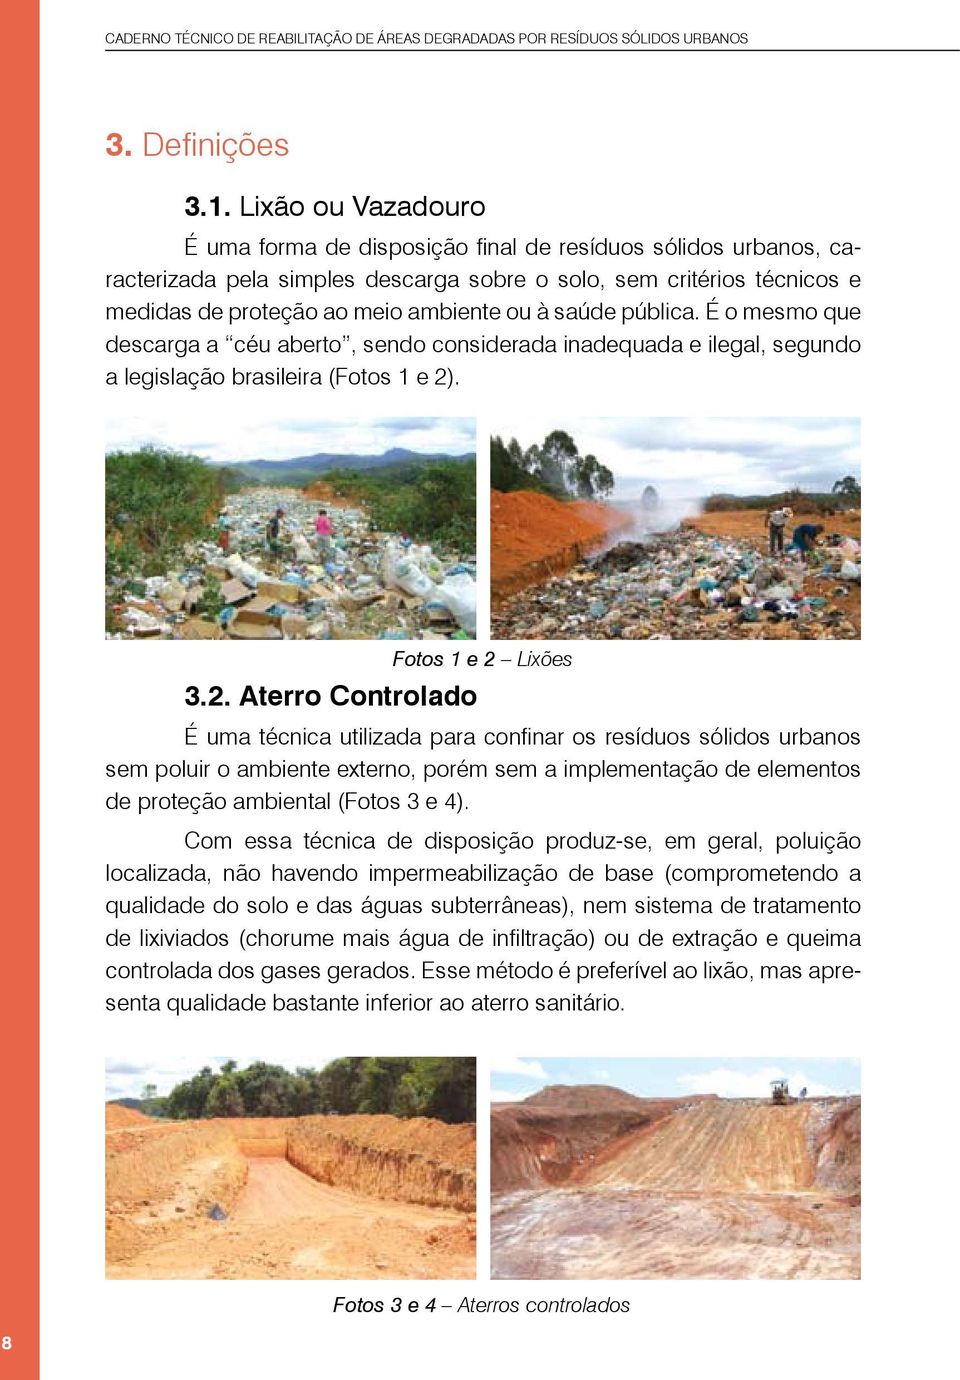 saúde pública. É o mesmo que descarga a céu aberto, sendo considerada inadequada e ilegal, segundo a legislação brasileira (Fotos 1 e 2)